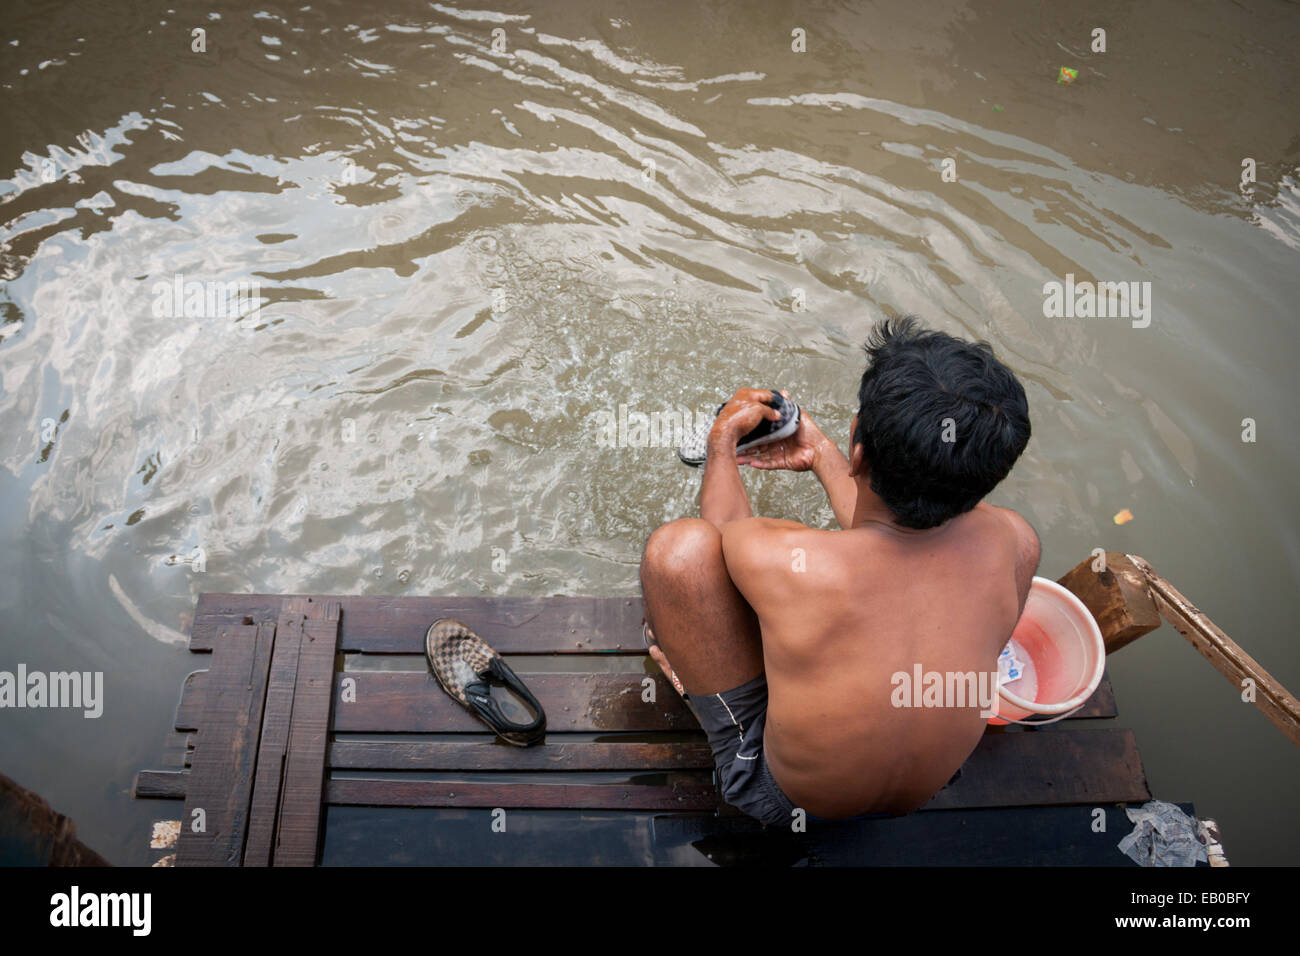 L'homme qui lave des vêtements sur la rivière Ciliwung, Jakarta. Ciliwung est déclaré comme l'un des plus forte pollution des rivières dans le monde. Banque D'Images